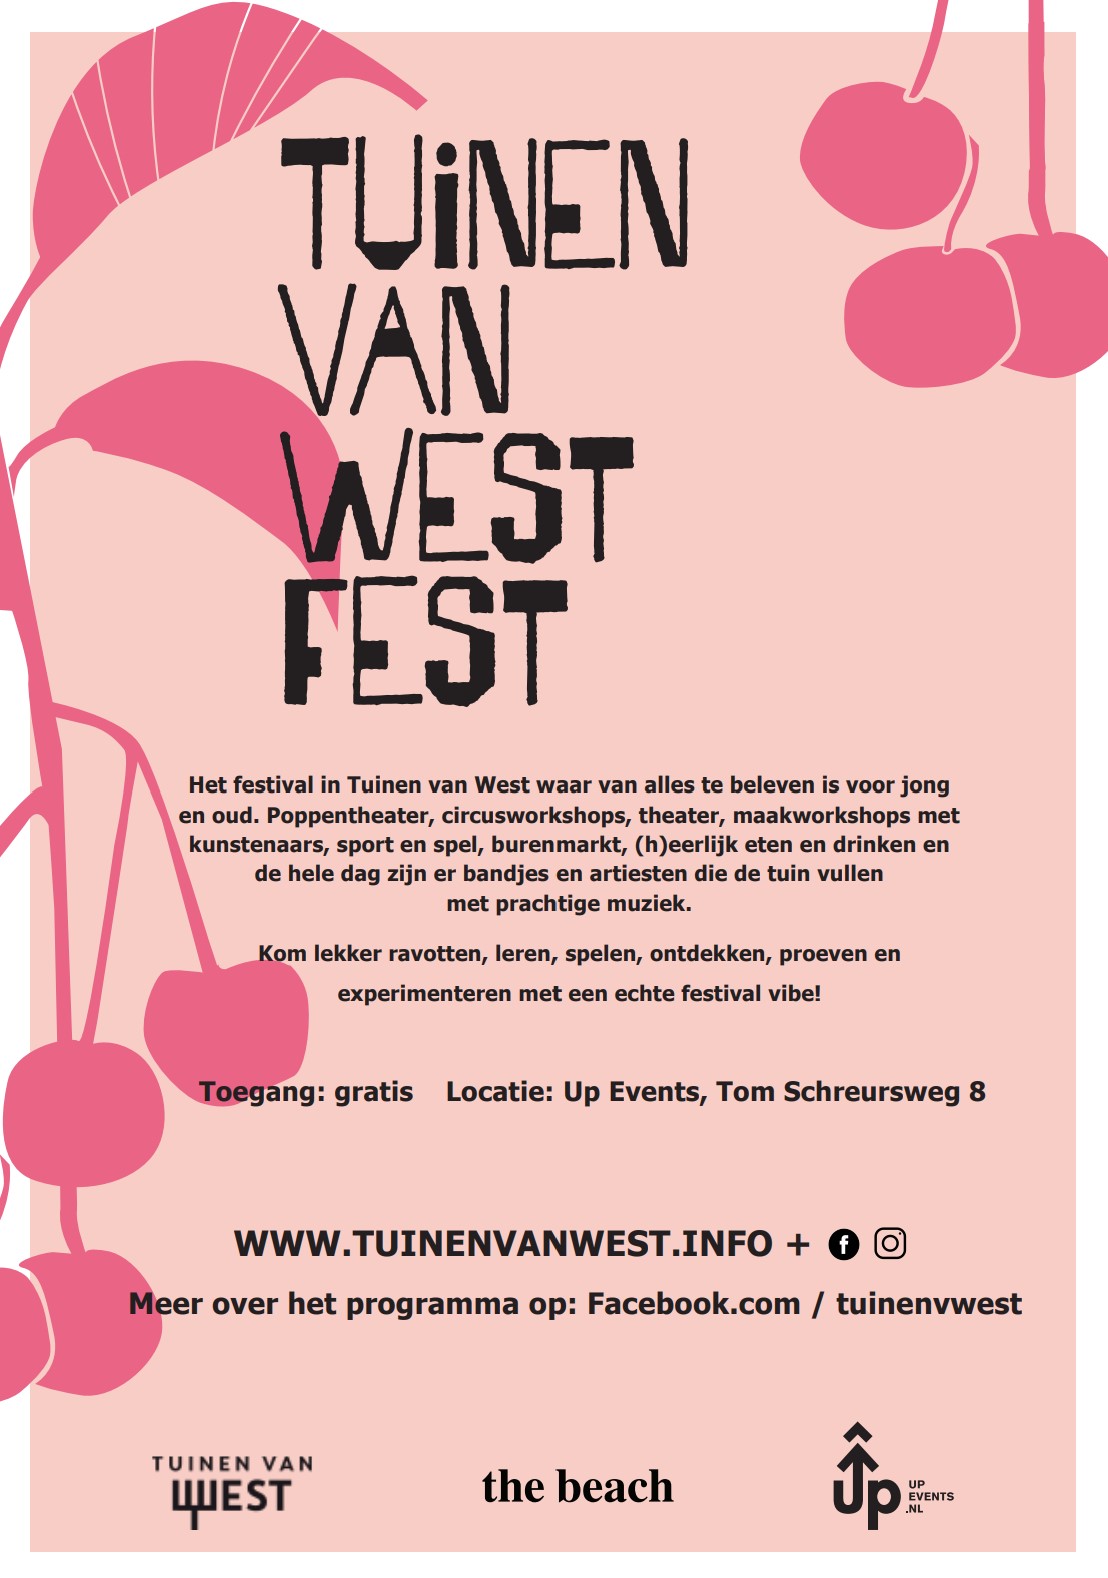 Tuinen van West Fest poster